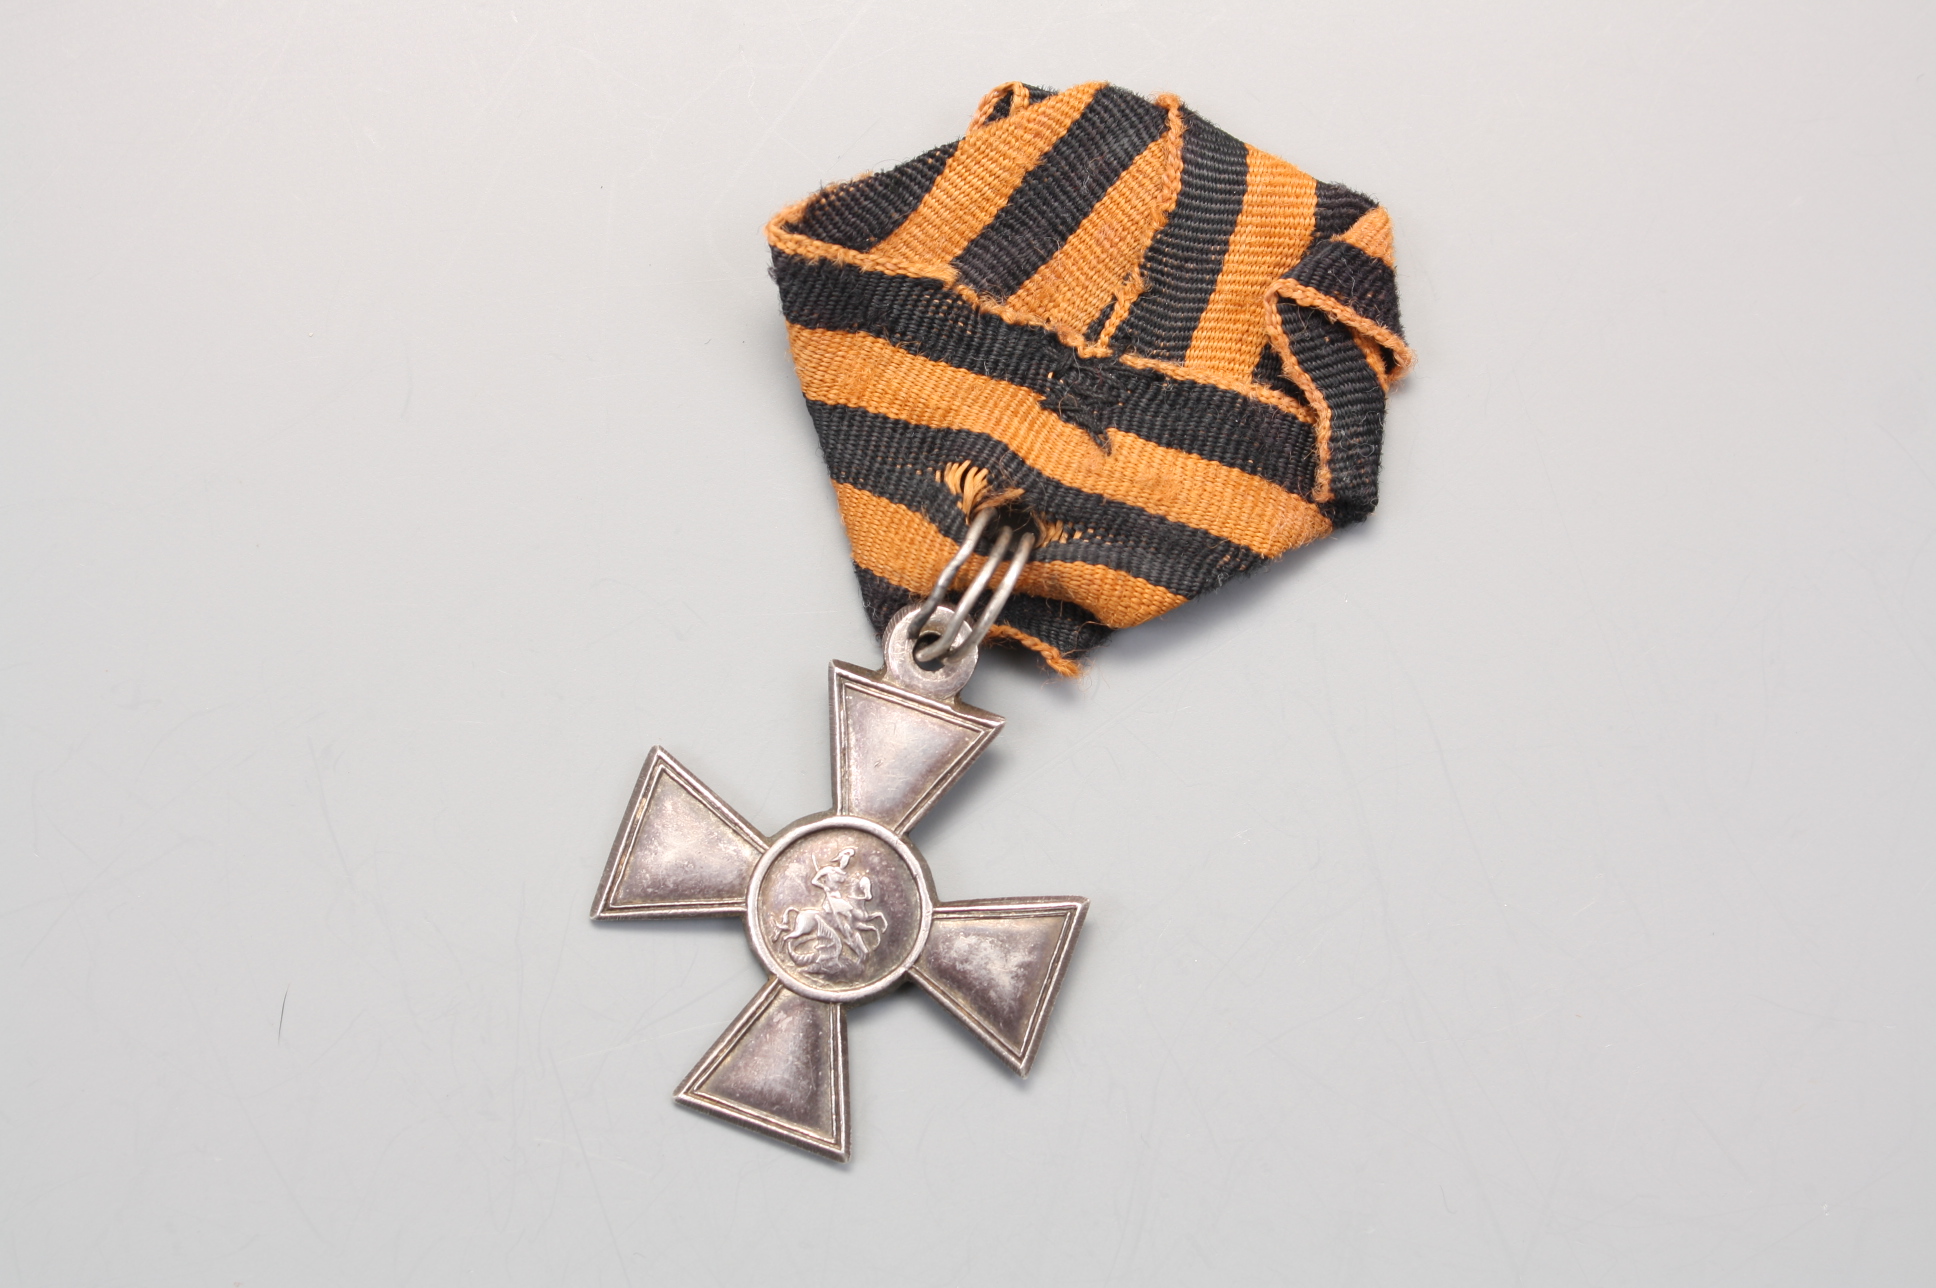 Георгиевский крест 3 ст. № 225546 на оригинальной ленте, Российская Империя.